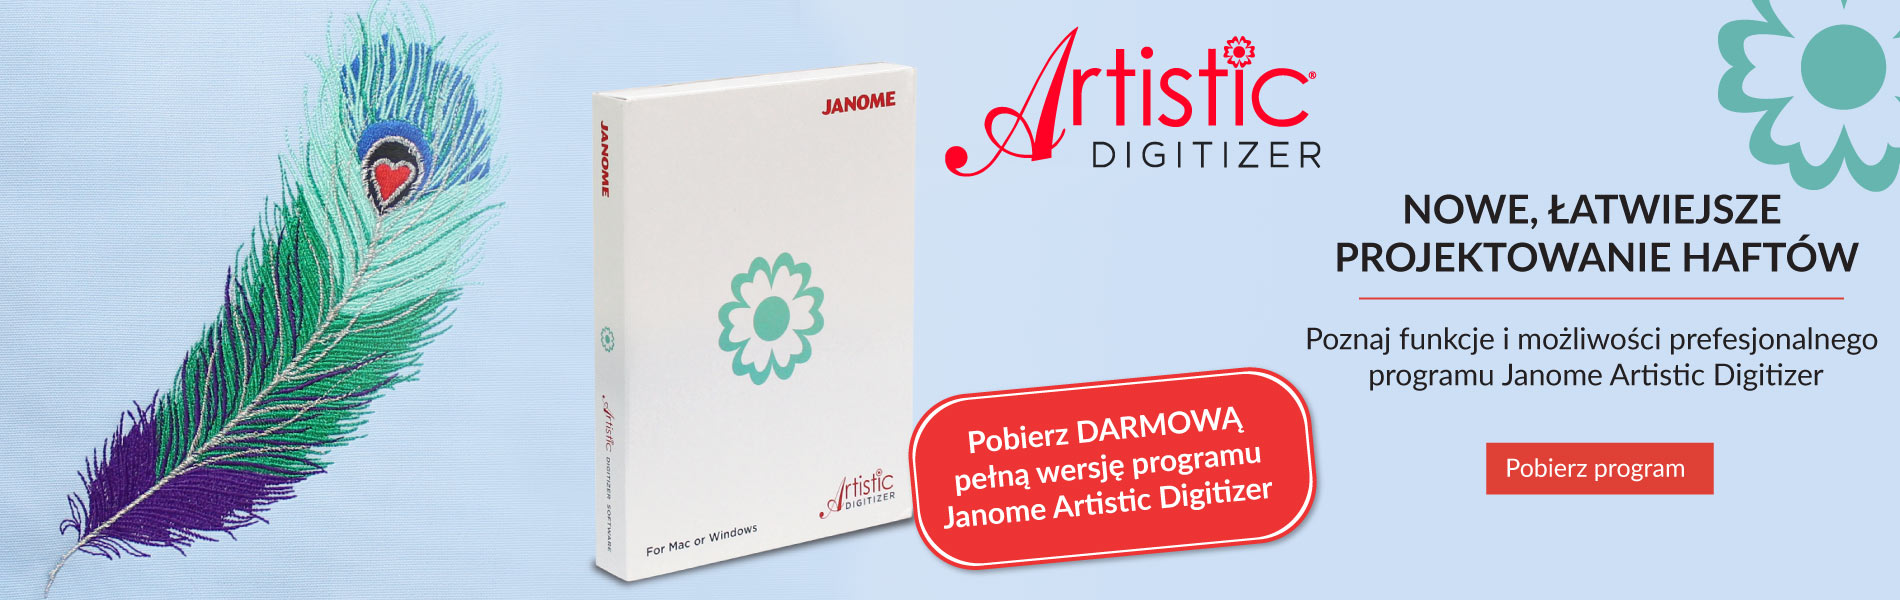 Testuj za darmo profesjonalny program do projektowania haftów Janome Artistic Digitizer